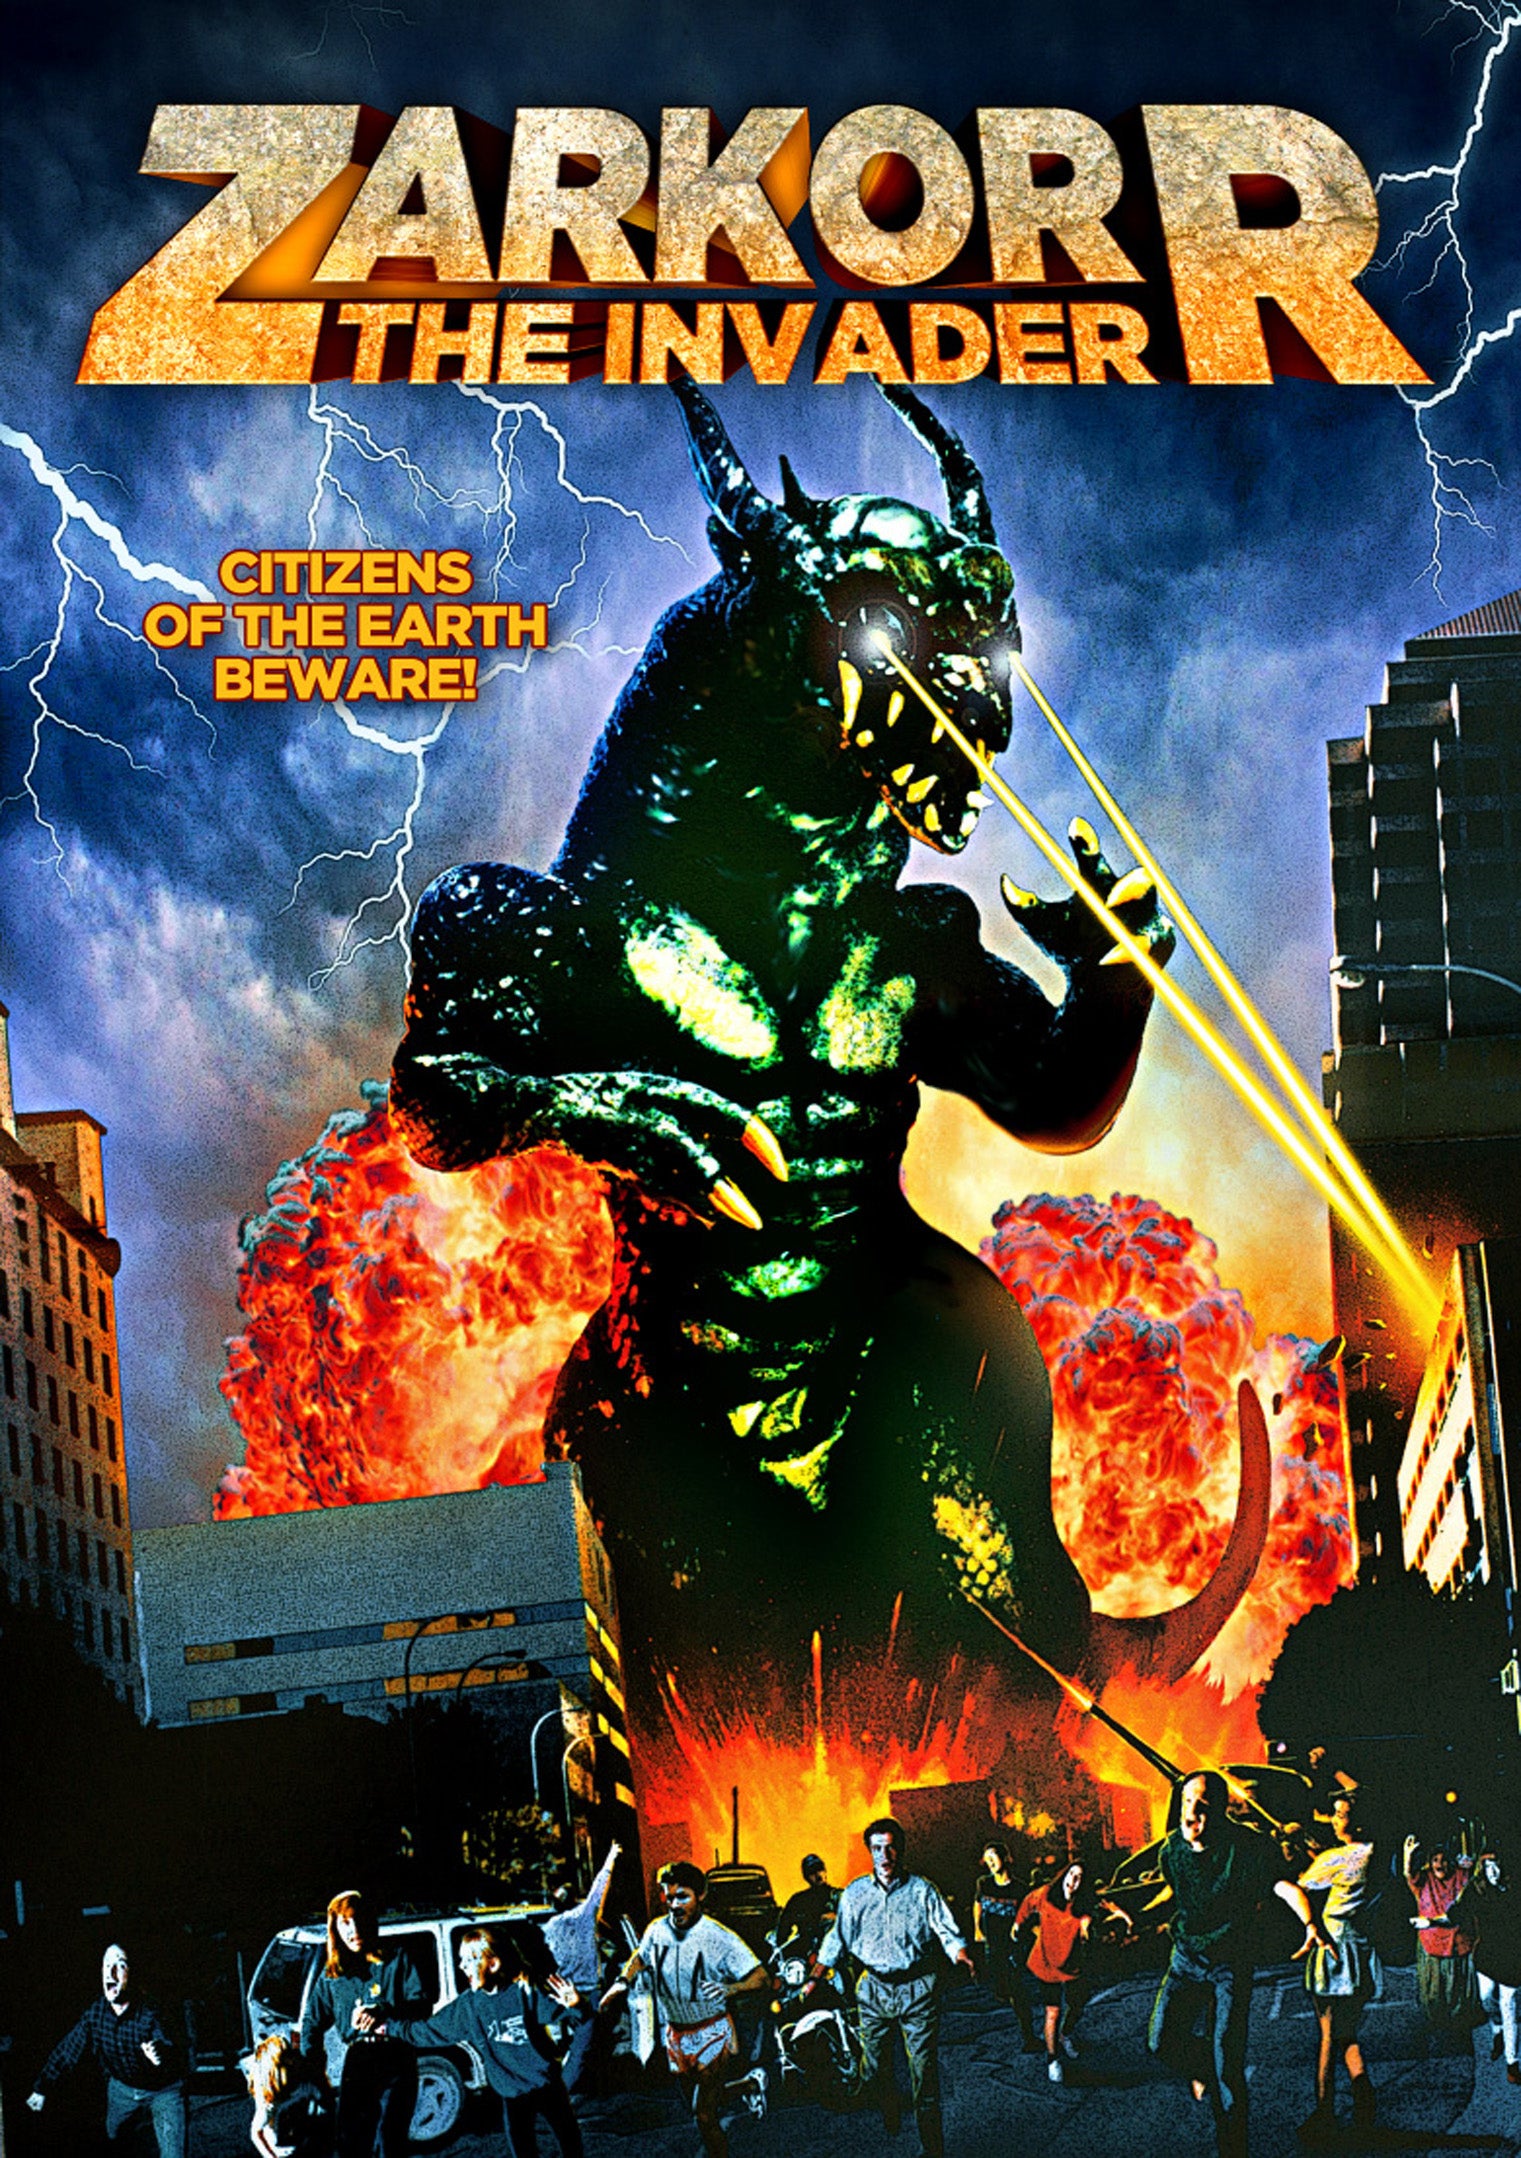 ZARKORR! THE INVADER DVD